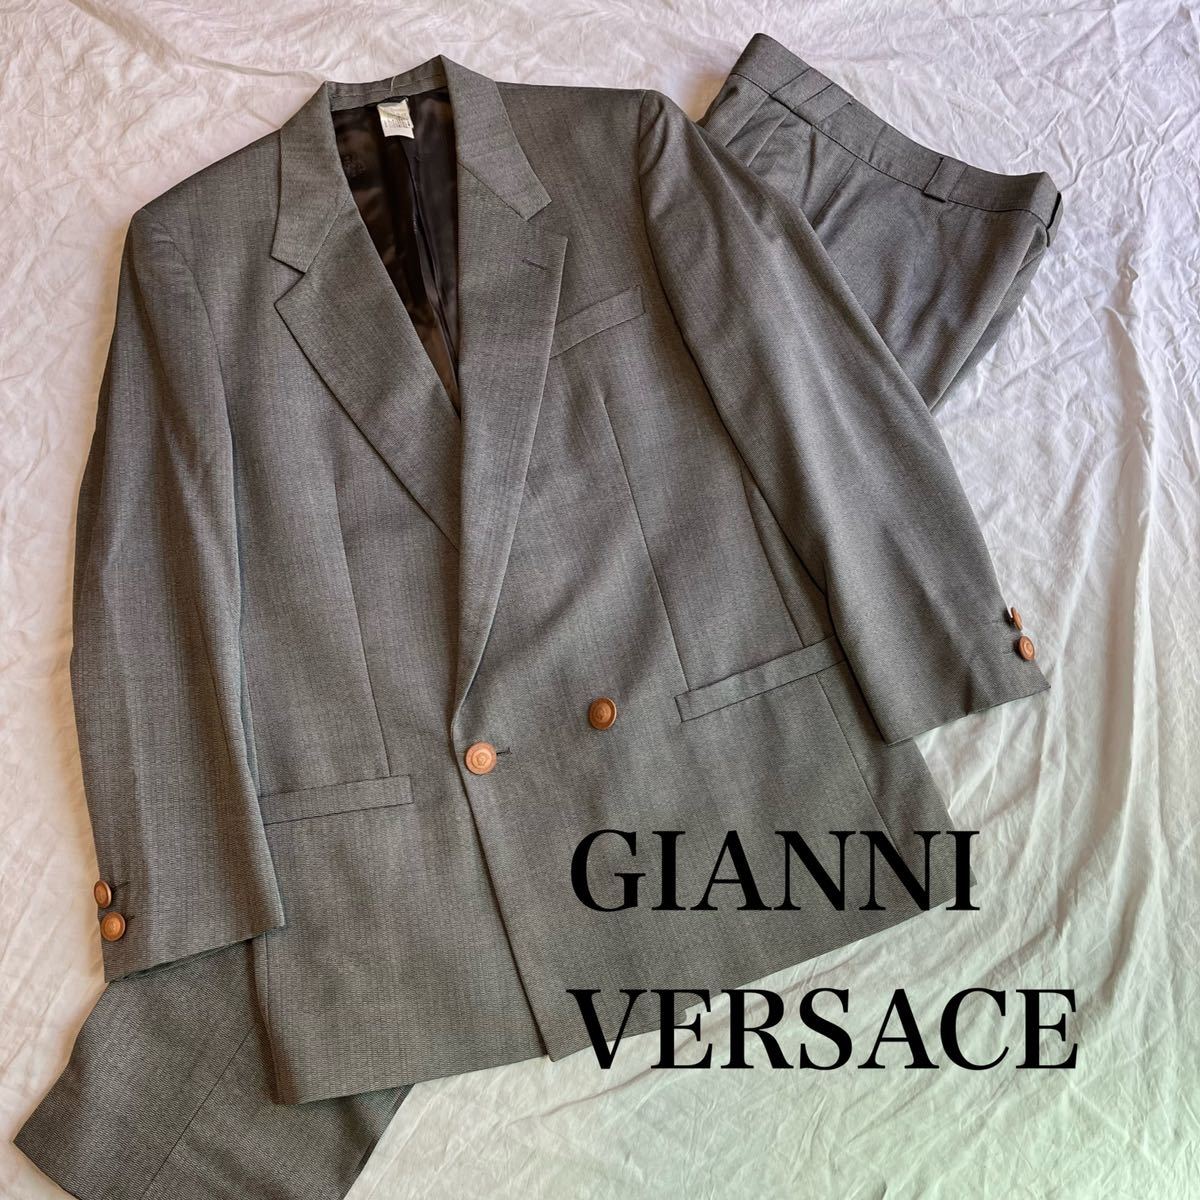 18900円 通販値段 Gianni Versace /セットアップ ダブルスーツ 